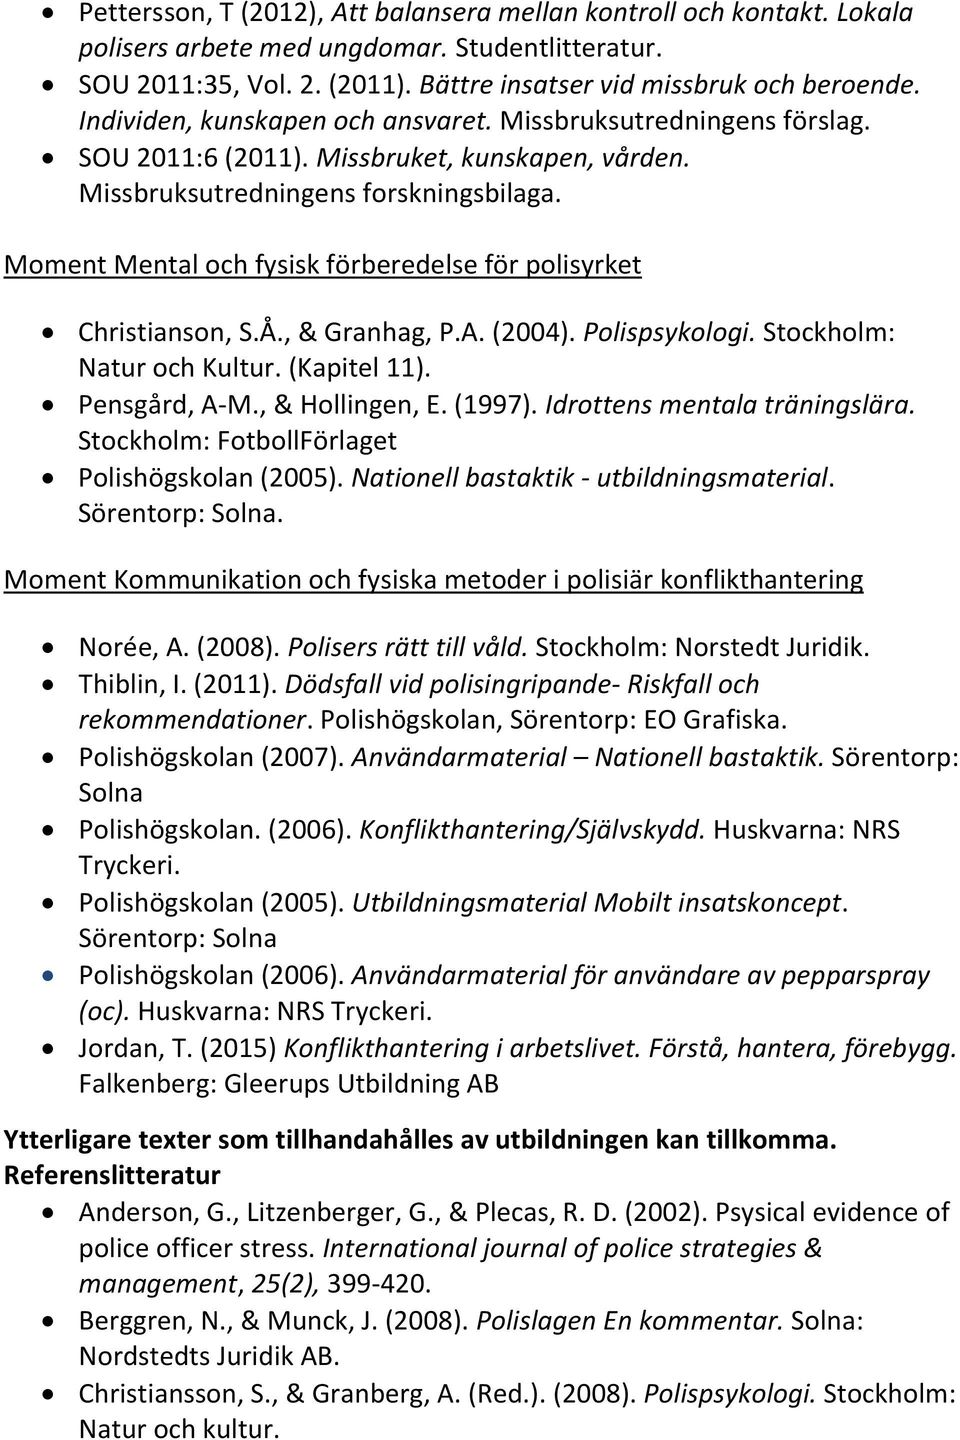 Moment Mental och fysisk förberedelse för polisyrket Christianson, S.Å., & Granhag, P.A. (2004). Polispsykologi. Stockholm: Natur och Kultur. (Kapitel 11). Pensgård, A-M., & Hollingen, E. (1997).